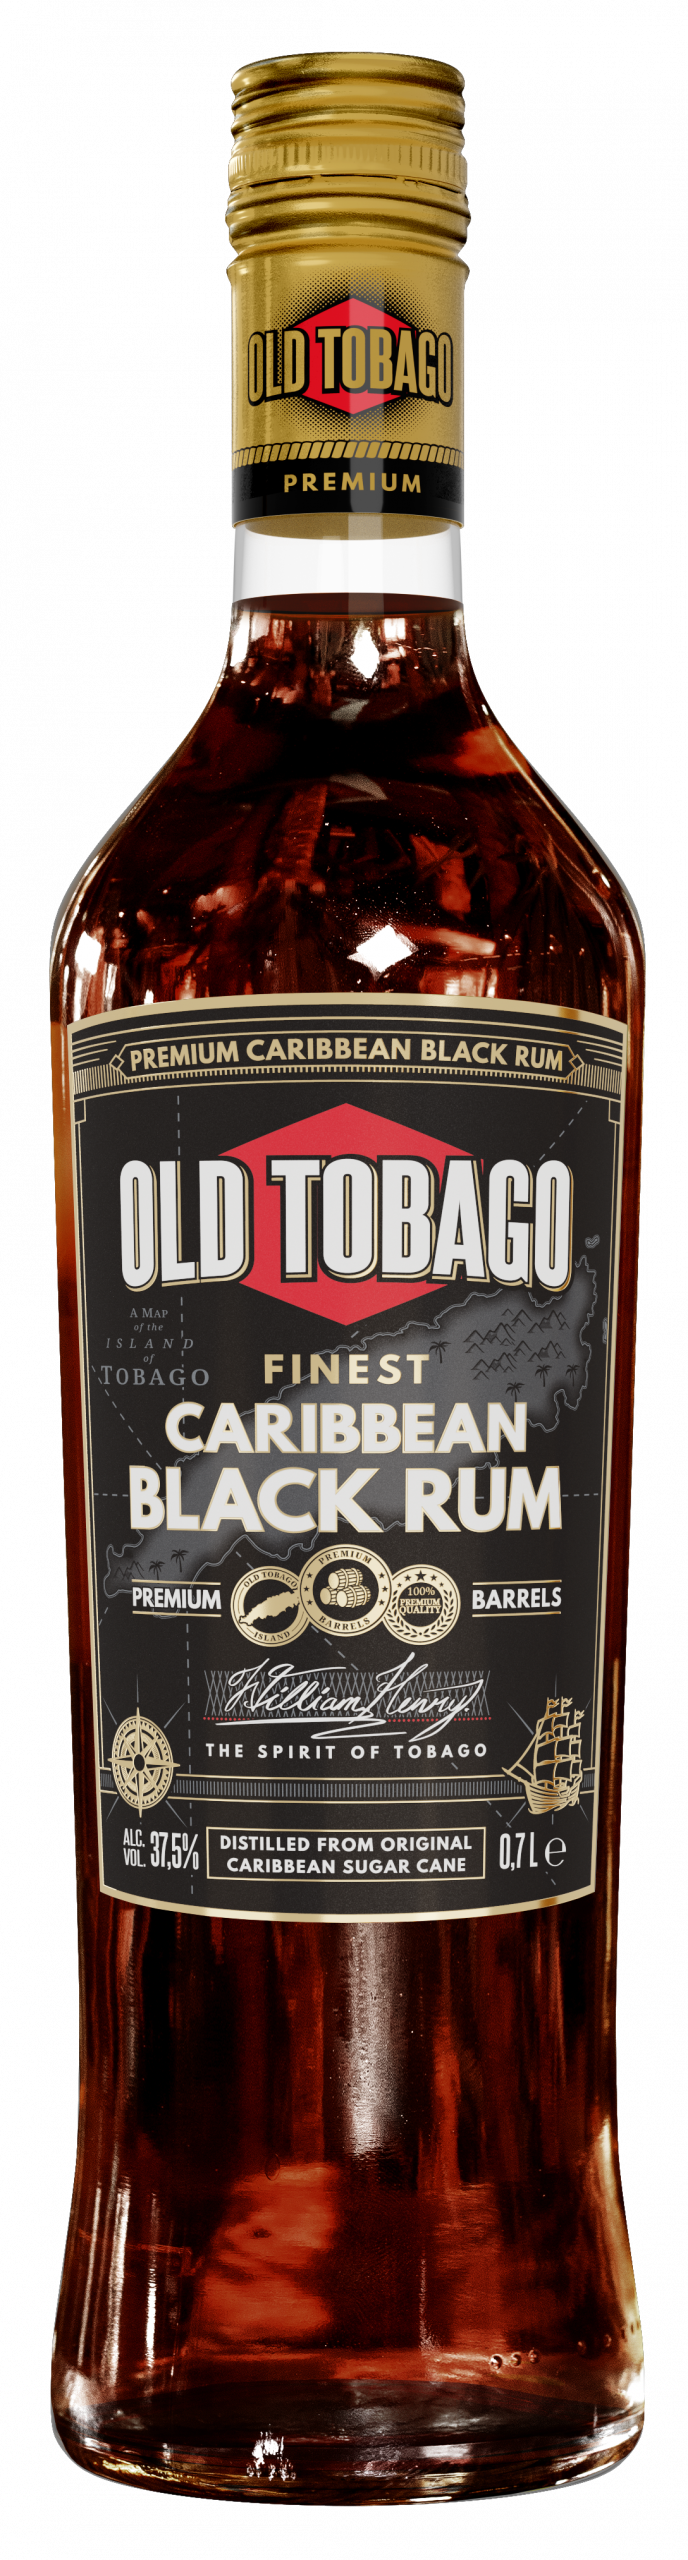 Black rum